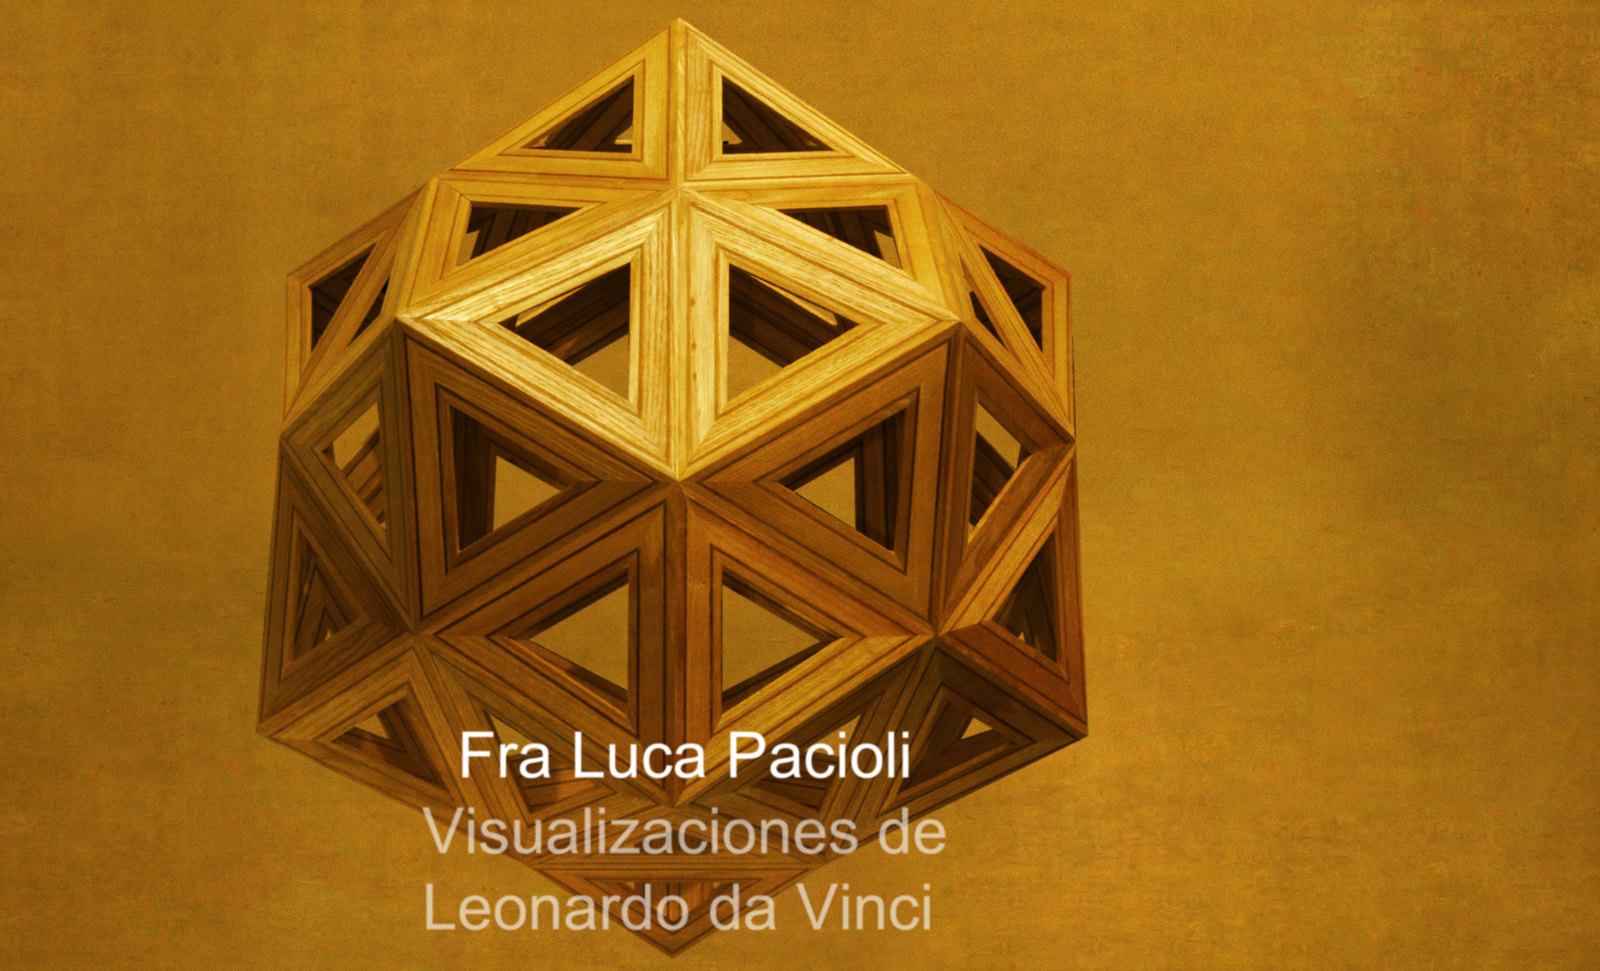 Luca Paccioli